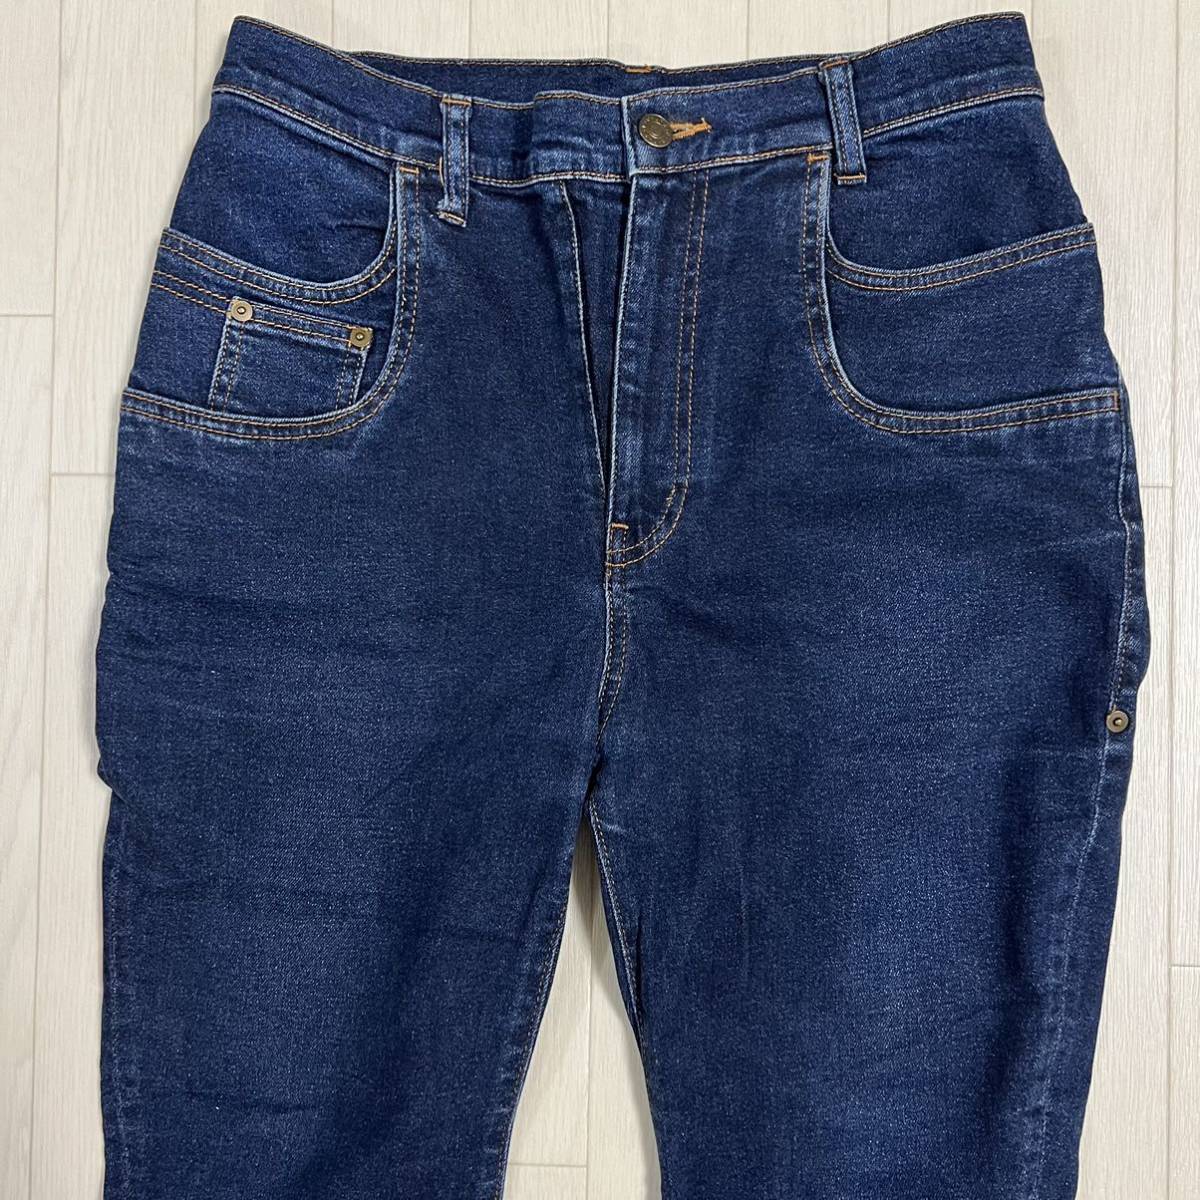 FRAPBOIS ... брюки    Denim    джинсы   ...